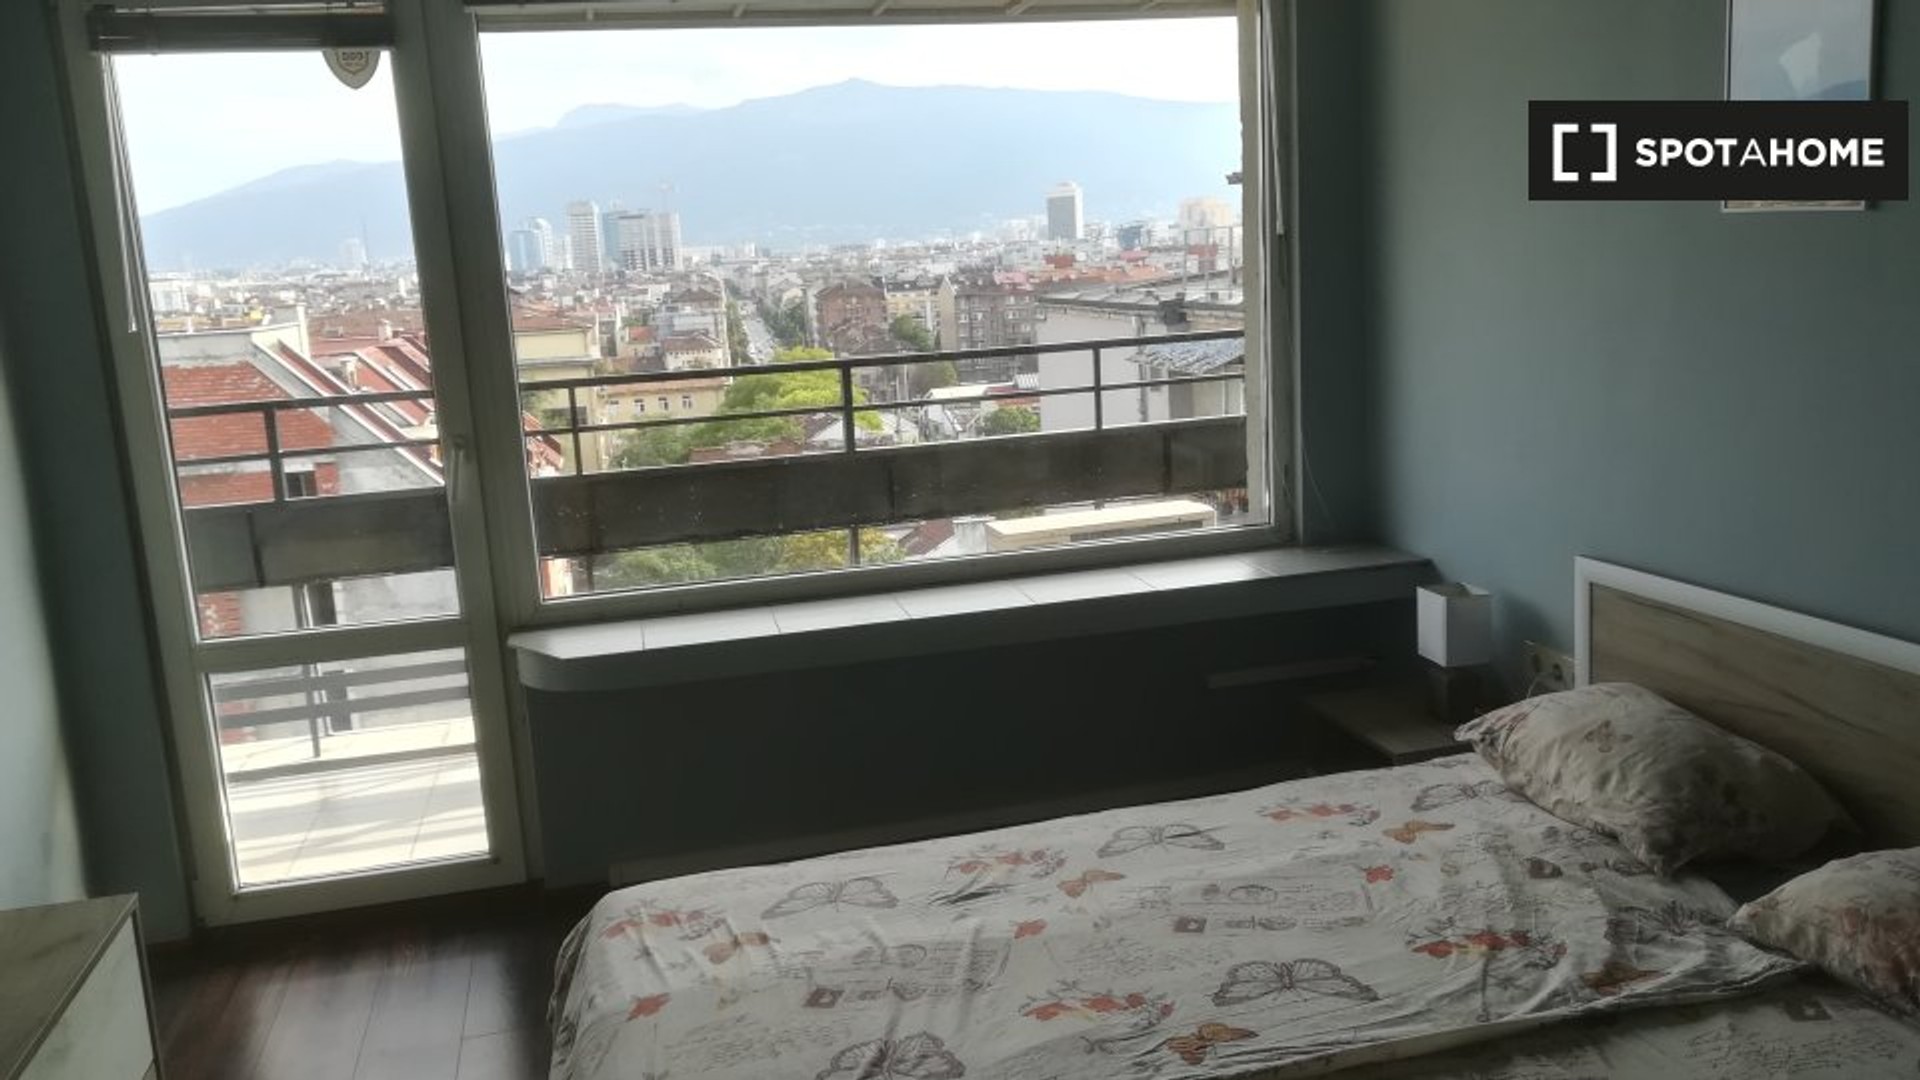 Cheap private room in Sofia